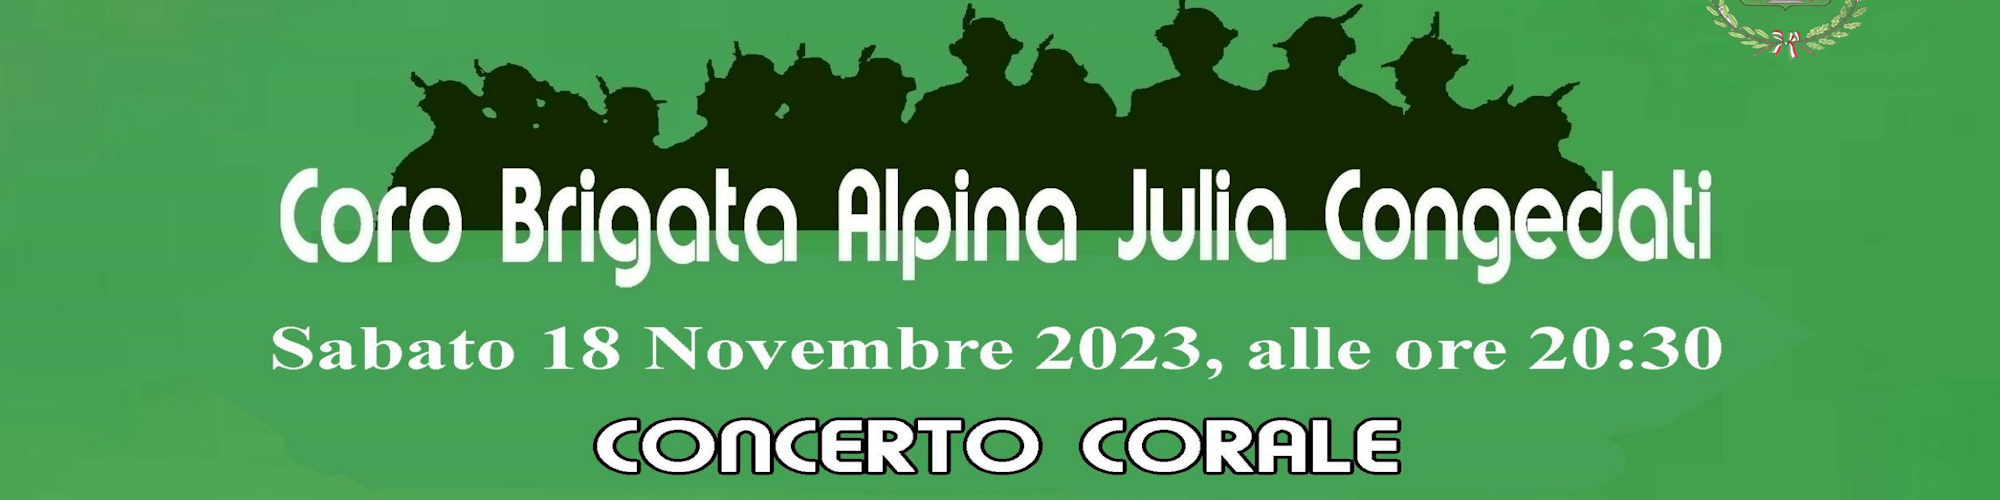 Immagine Coro Brigata Alpina Julia Congedati